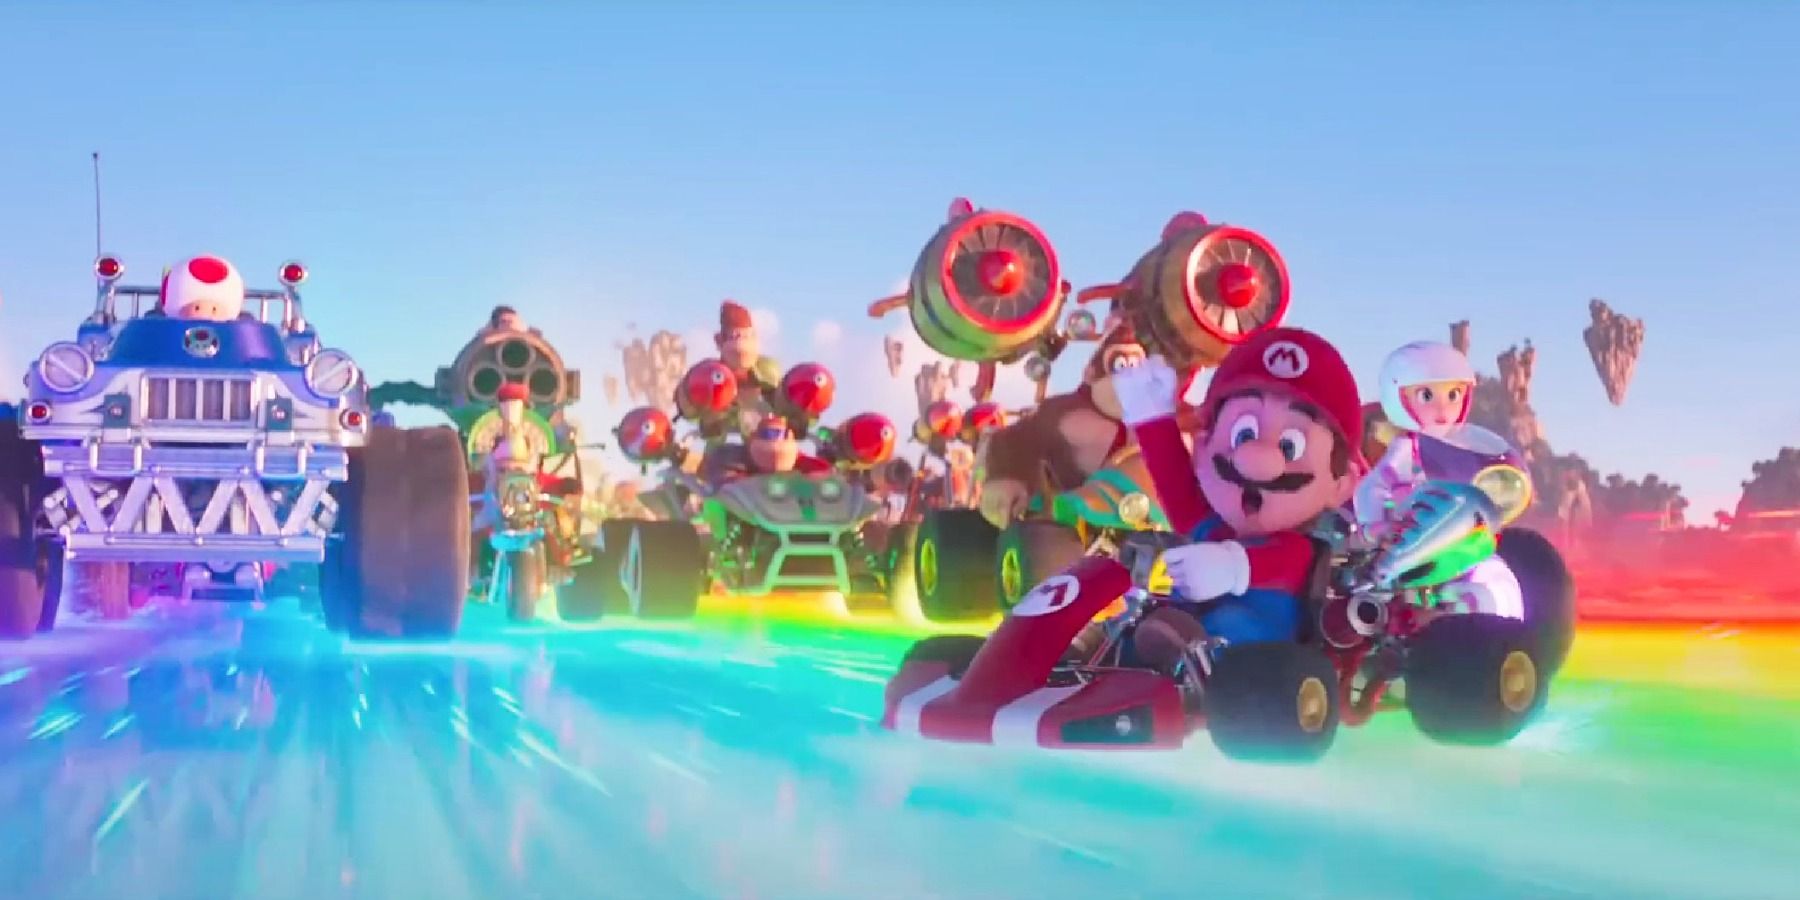 Mario Kart scene in The Super Mario Bros. Movie trailer